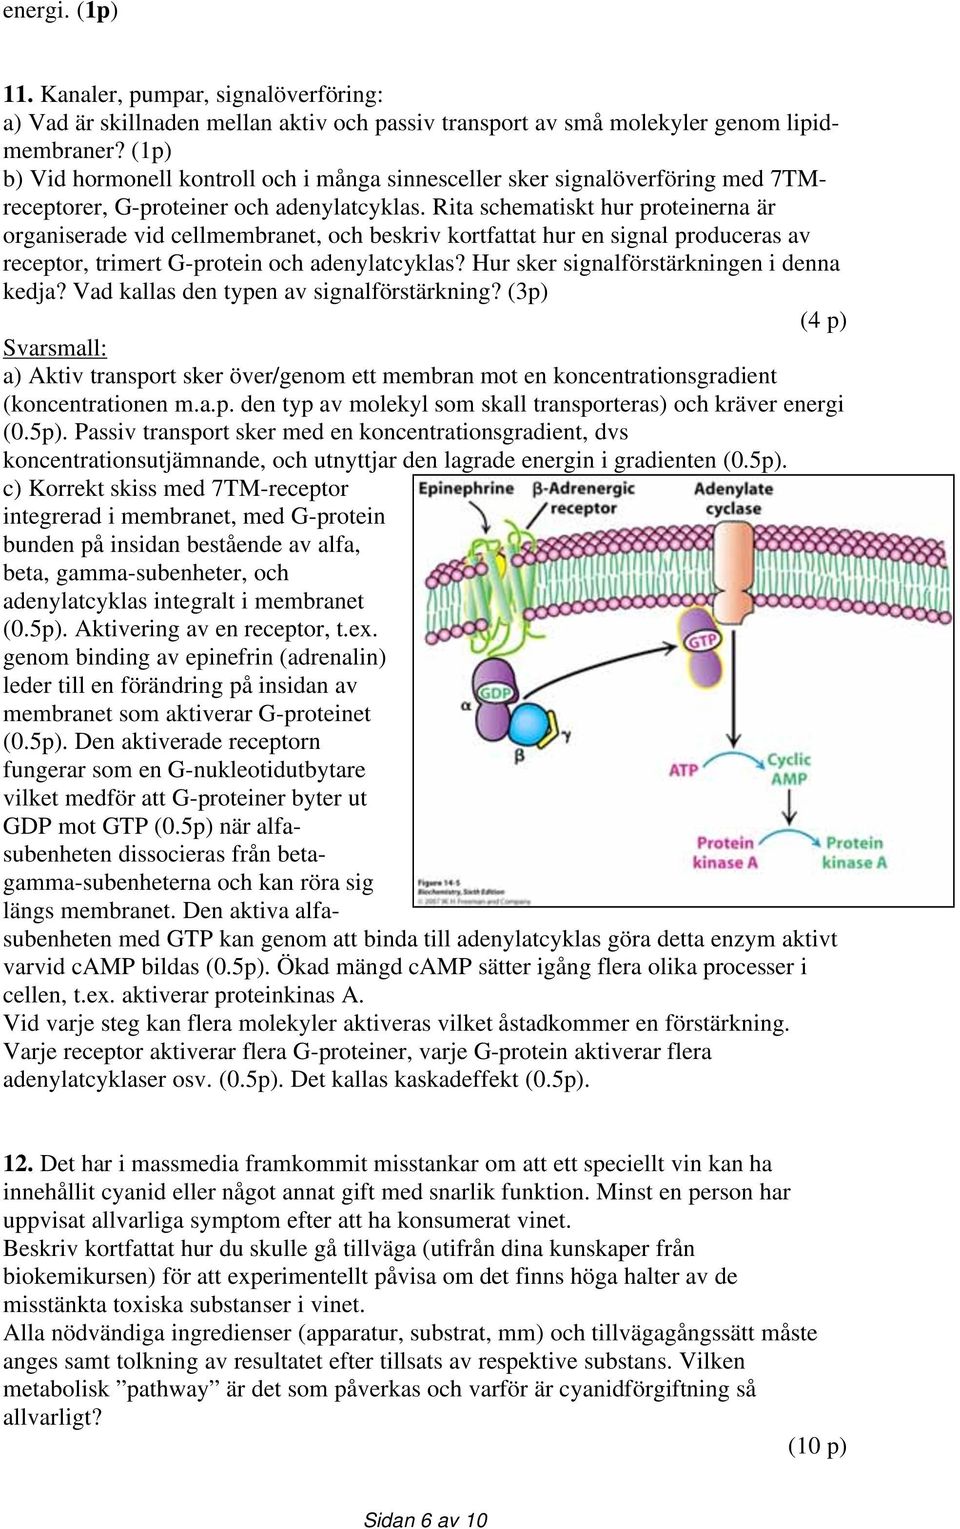 Rita schematiskt hur proteinerna är organiserade vid cellmembranet, och beskriv kortfattat hur en signal produceras av receptor, trimert G-protein och adenylatcyklas?